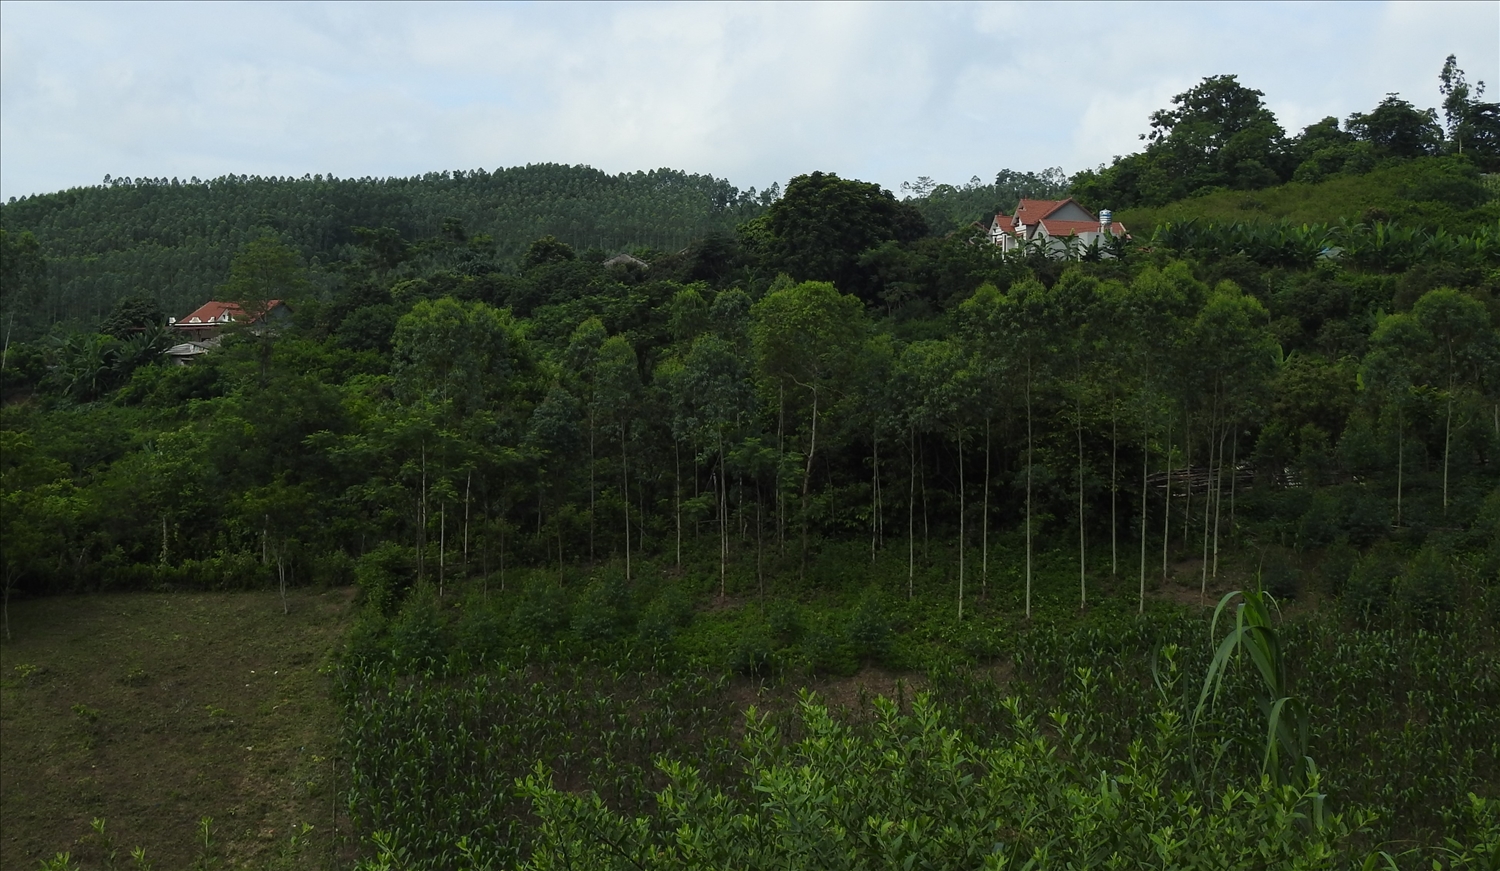 Hiện nay, Nhân dân huyện Chi Lăng đang tích cực bảo vệ rừng, phủ xanh đất trống, đồi trọc, nhiều người đã làm giàu từ việc phát triển kinh tế rừng (Trong ảnh: một góc xã Hữu Kiên)